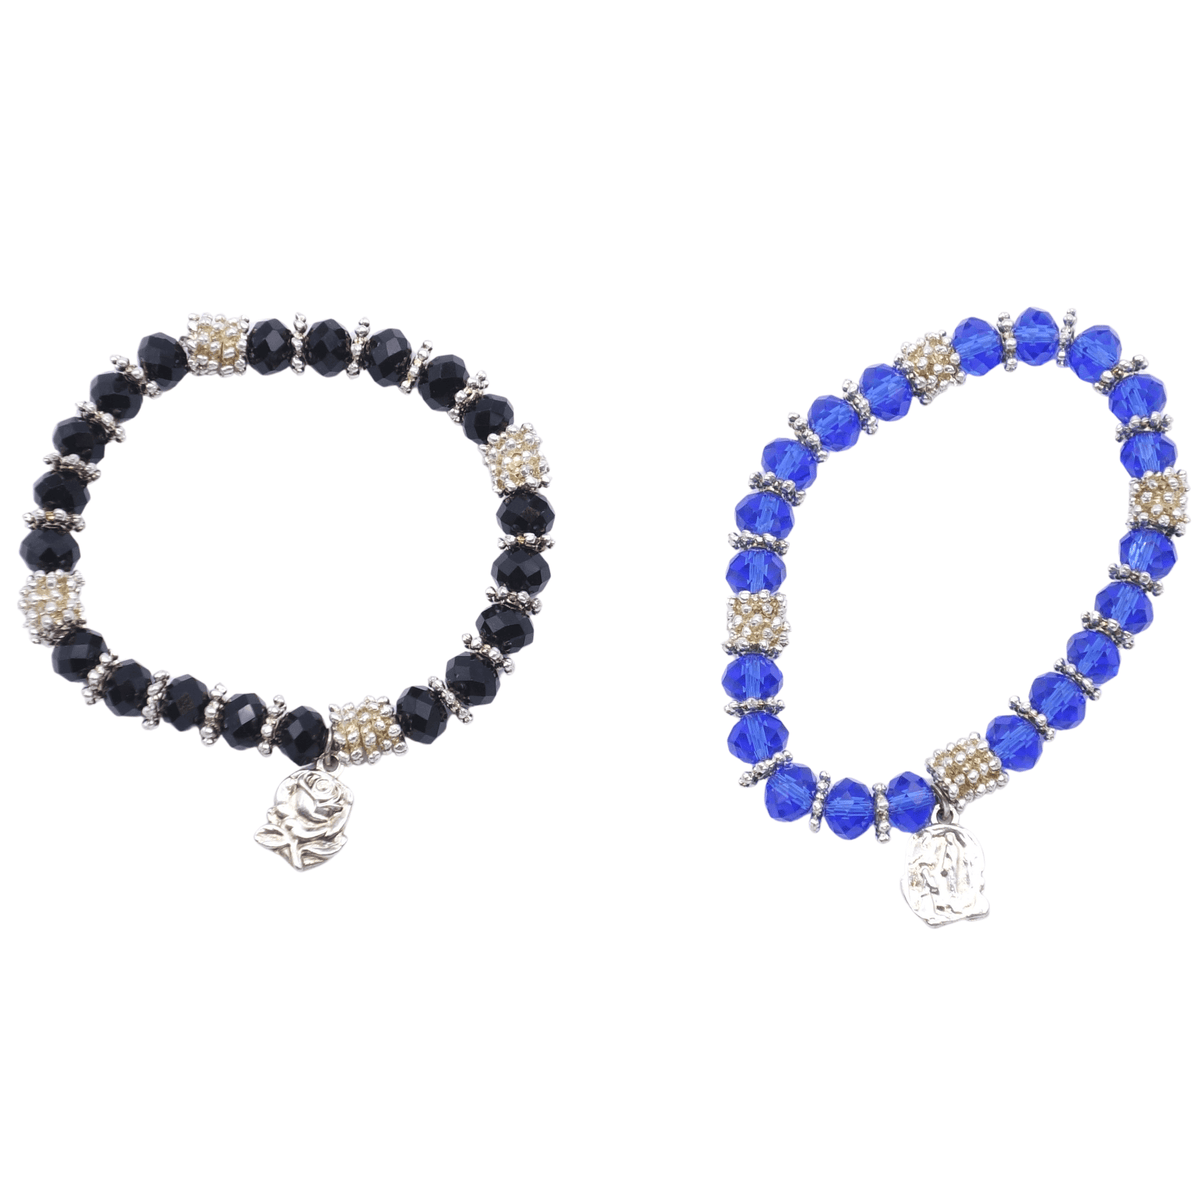 Bracelet cristal et  métal sur élastique bleu ou noir (prix à l'unité) - Bracelet cristal et  métal sur élastique bleu ou noir (prix à l'unité)